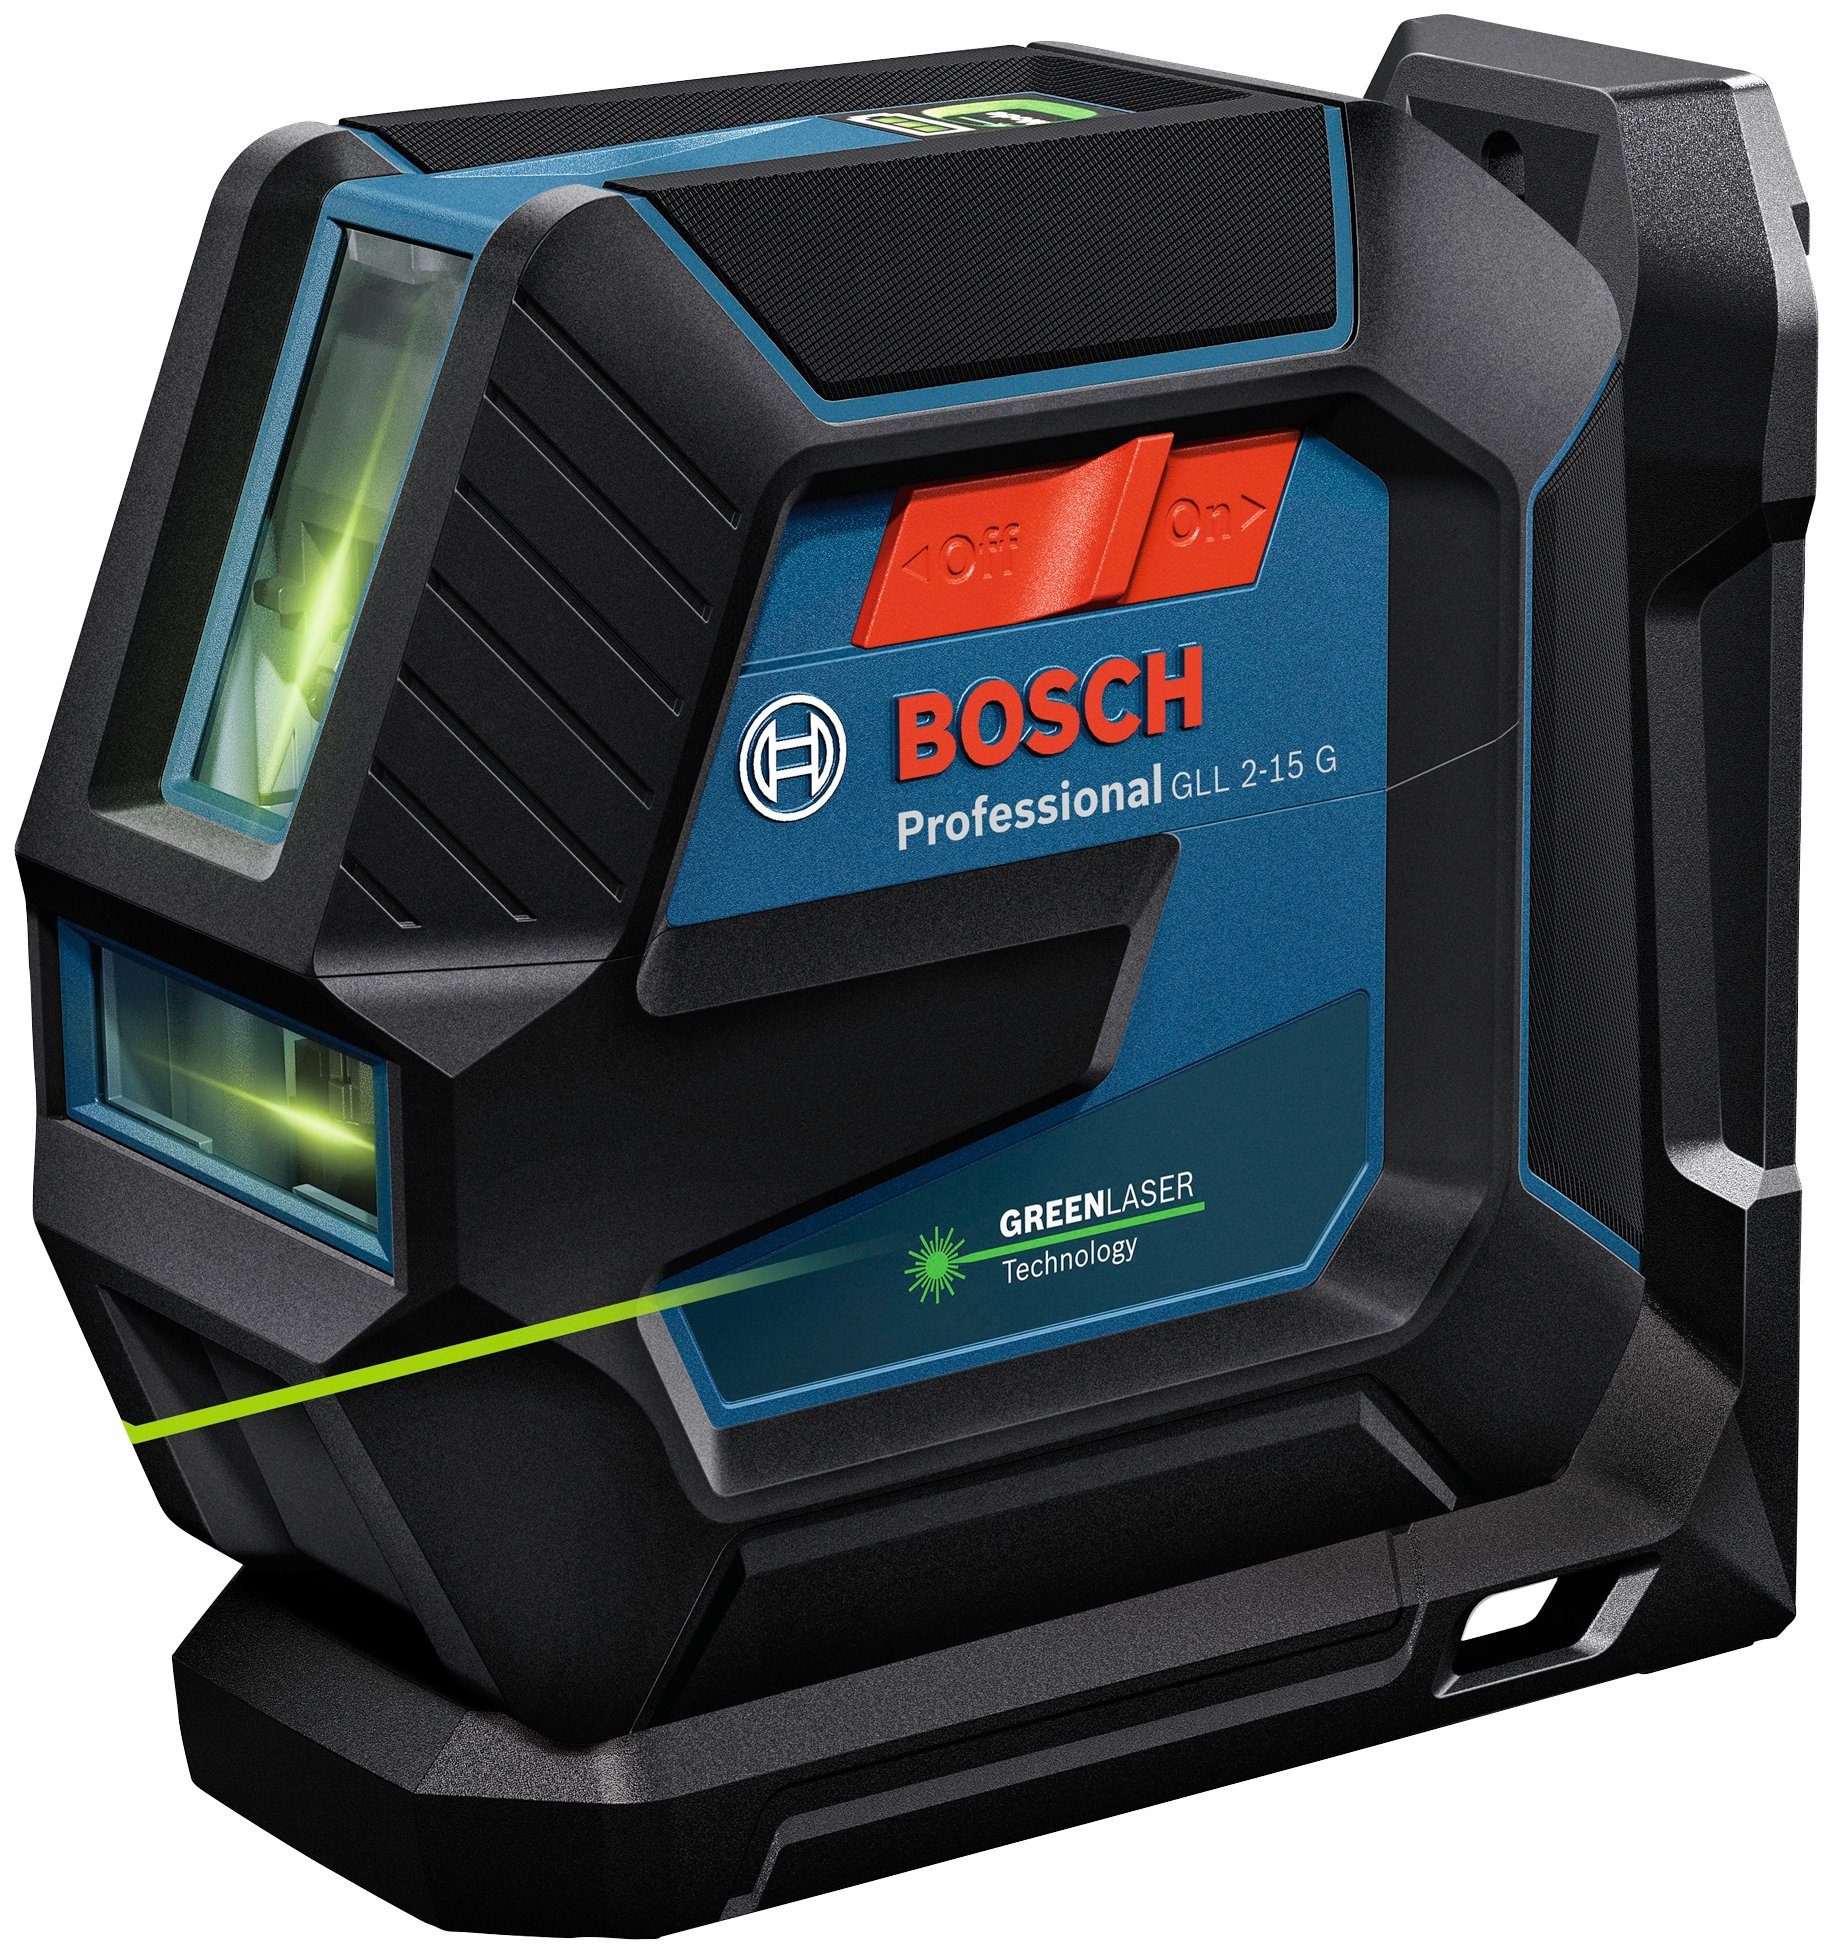 und Professional Bosch Linienlaser Spritzwasserschutz Handwerkerkoffer-Set, (Set), G 2-15 IP64 Professional GLL Staub-